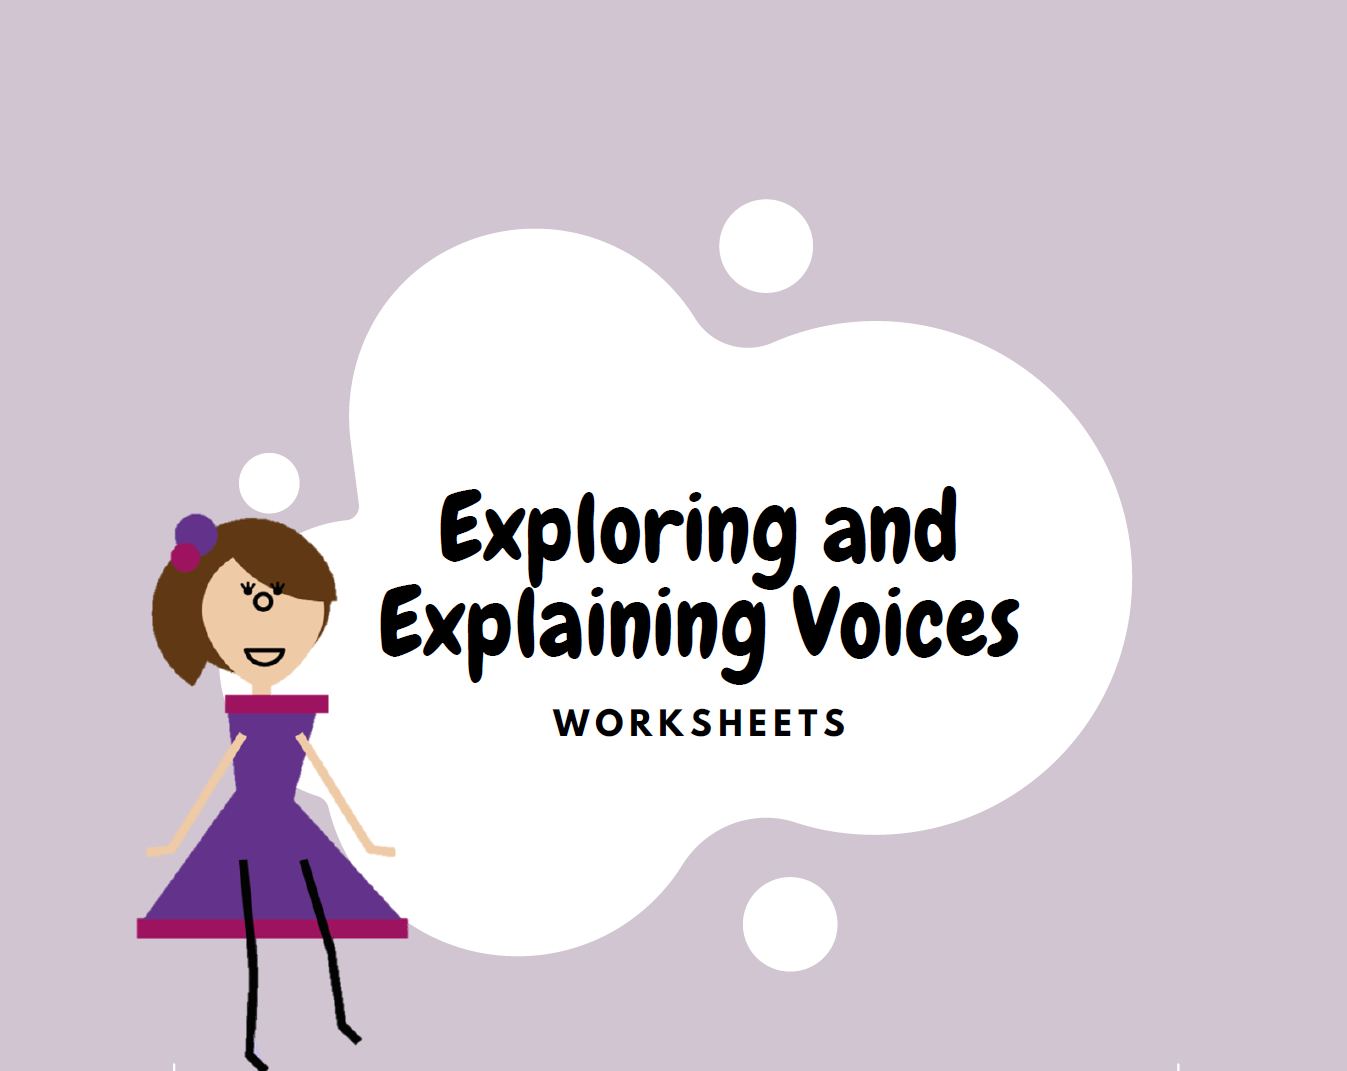 Explore and explain voices